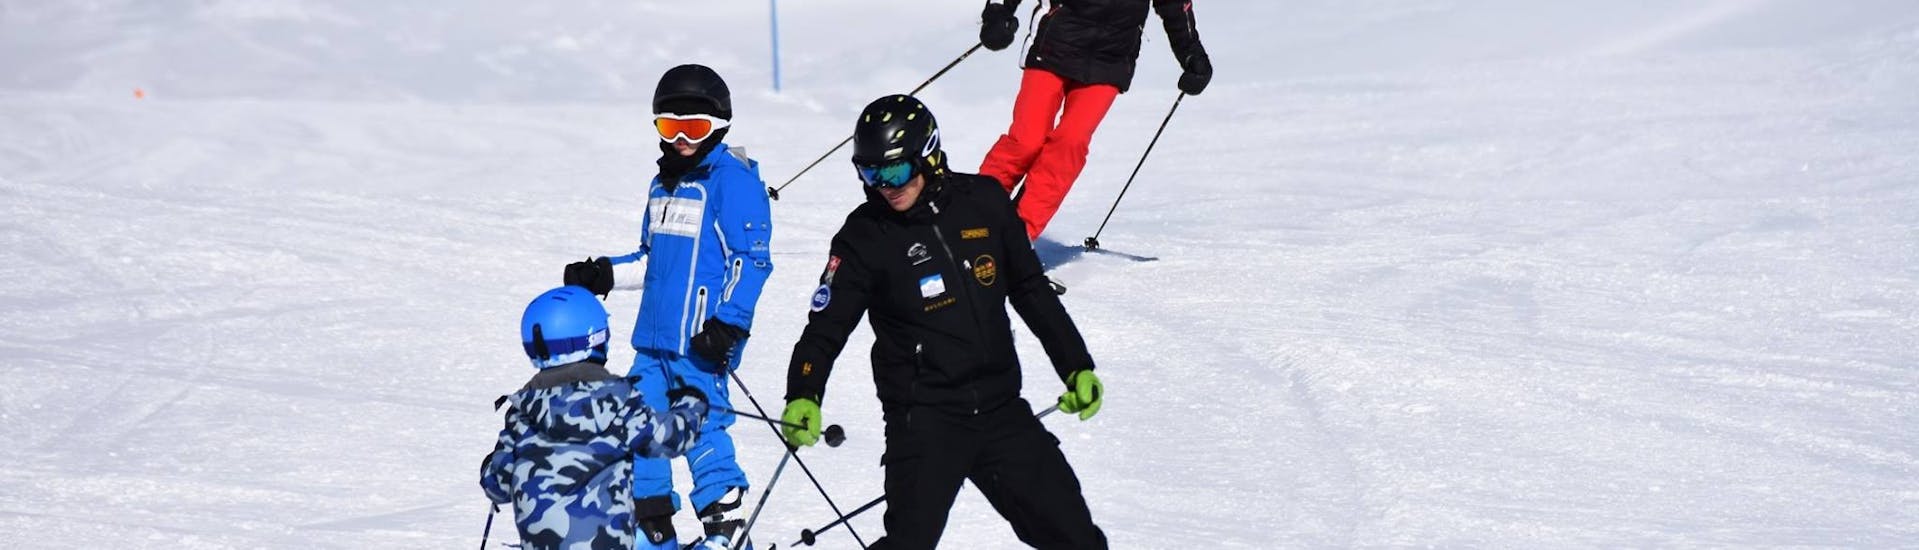 Maestro di sci e studenti che scendono con lo spazzaneve durante le lezioni di sci per bambini alle prime armi con Ski Cool St. Moritz.